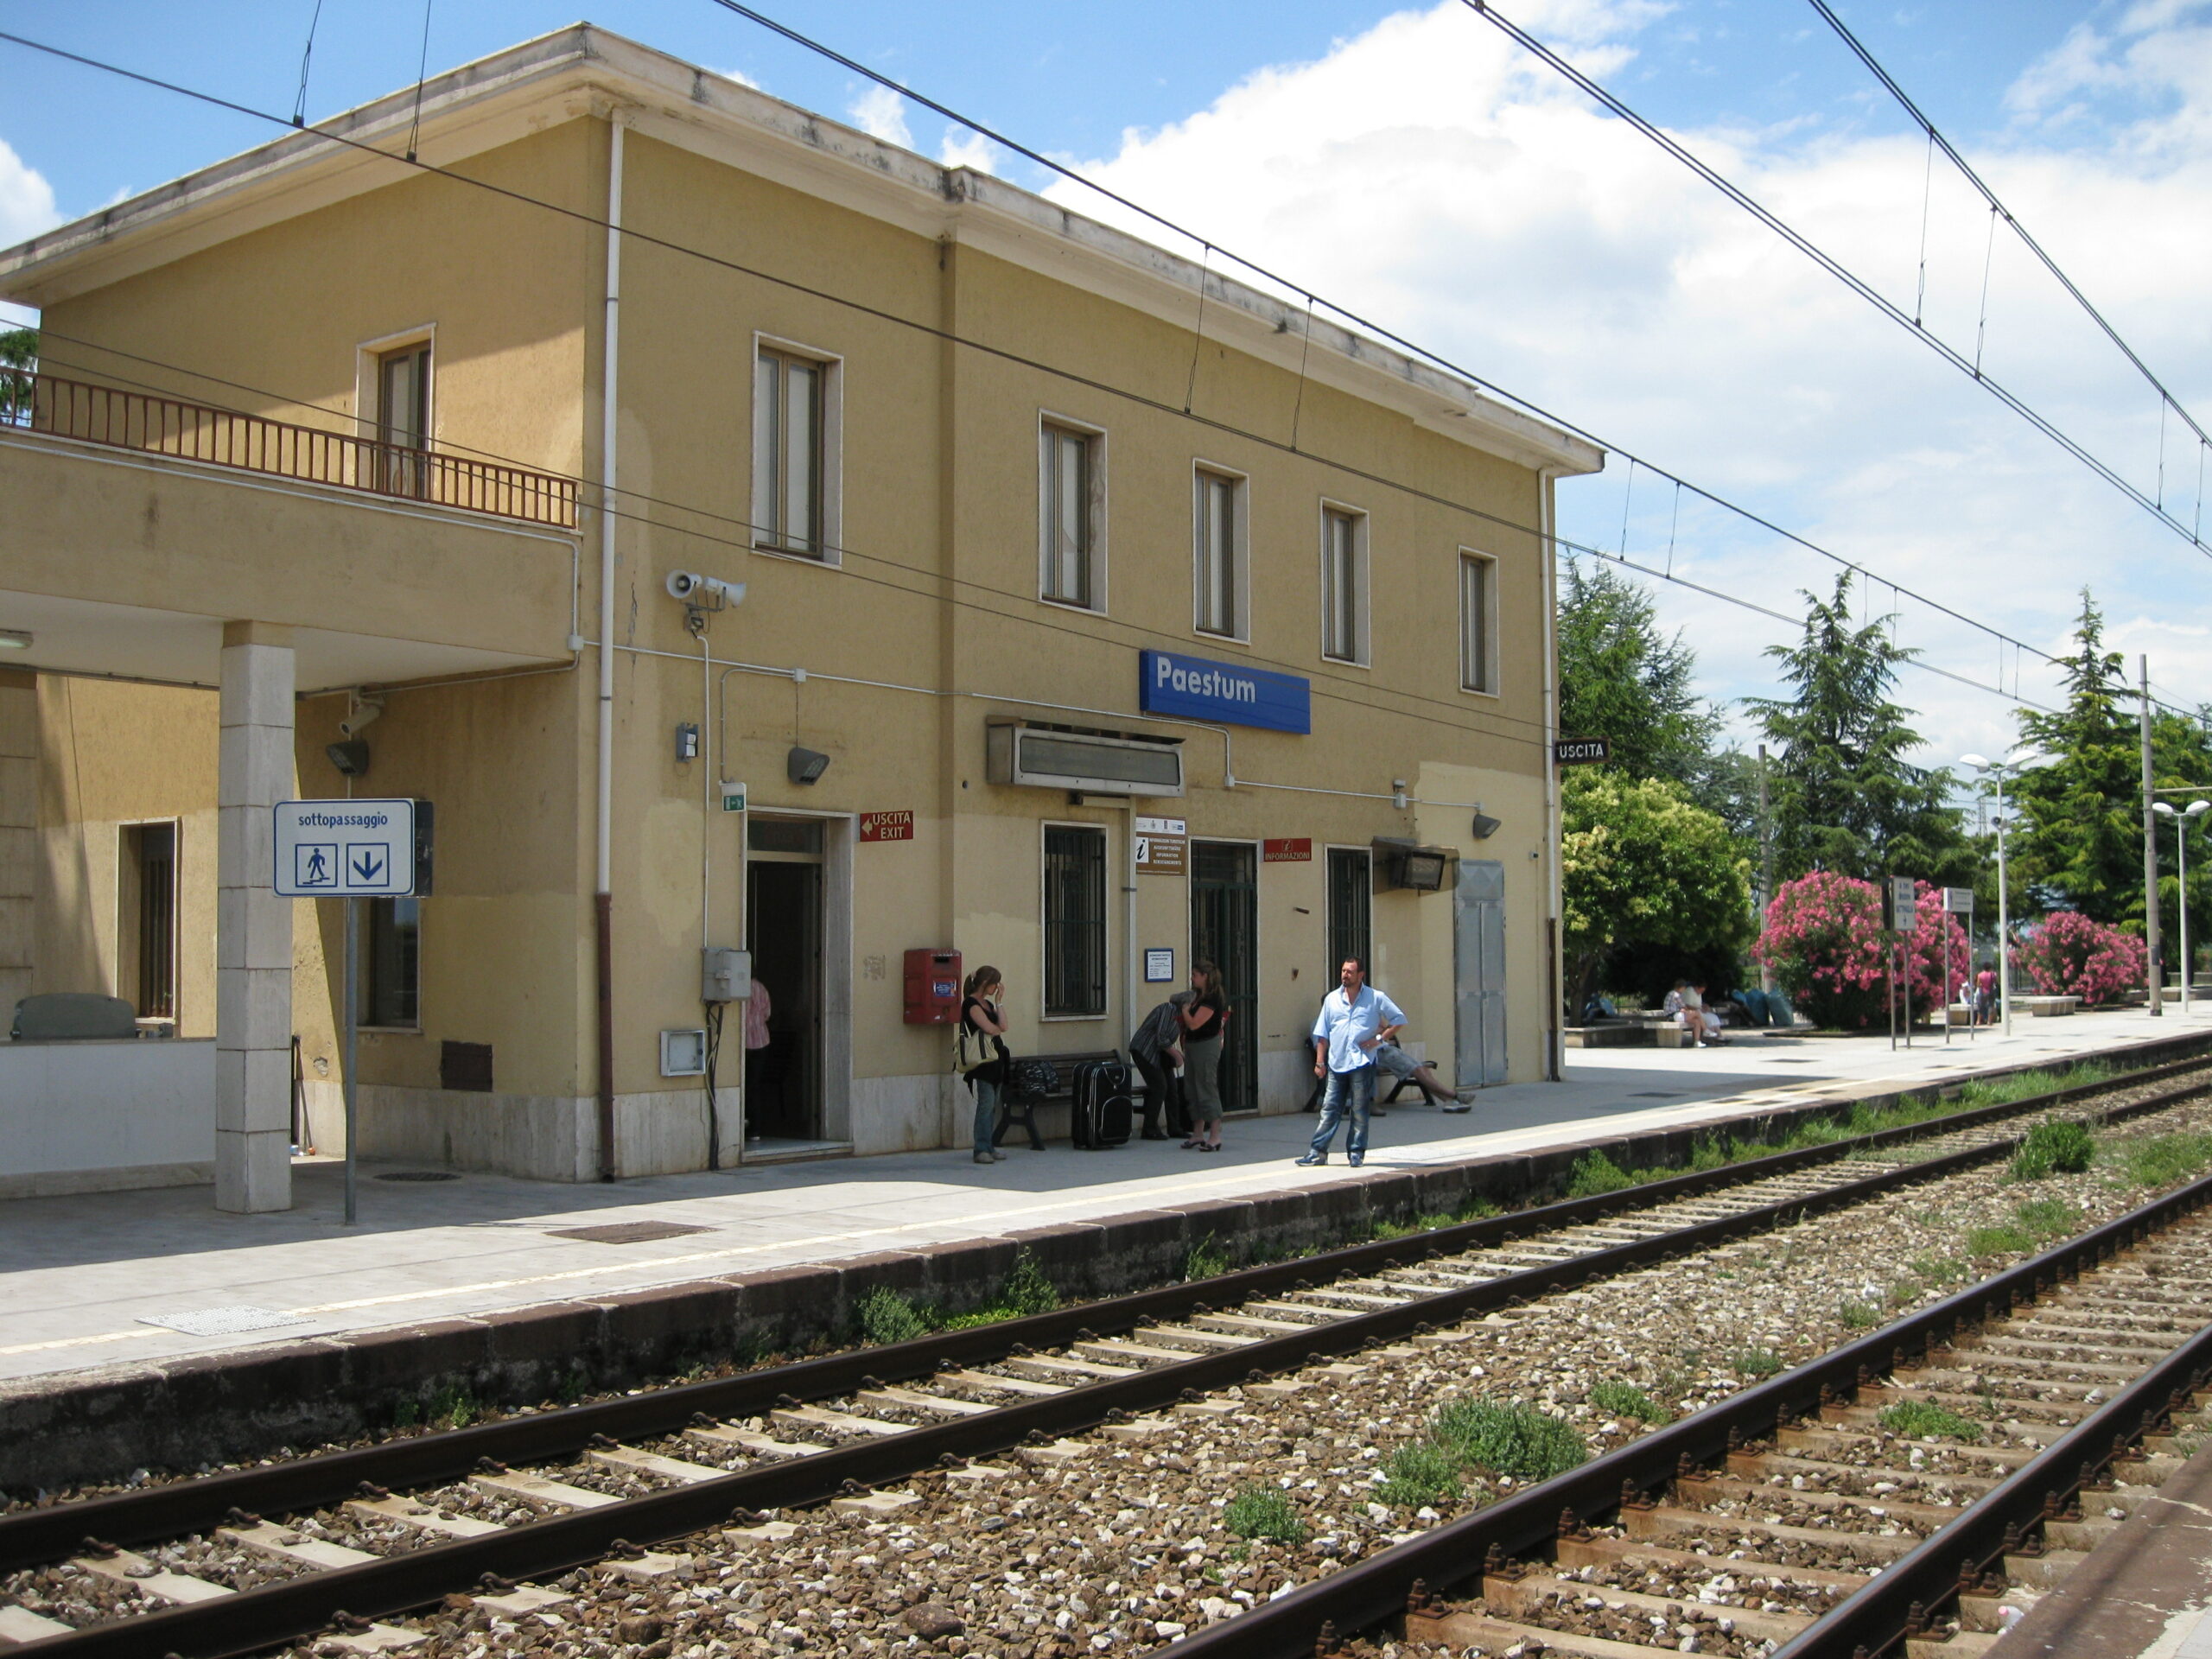 Approvato progetto del sottopasso ferroviario di Paestum: via libera definitivo dopo anni di attesa